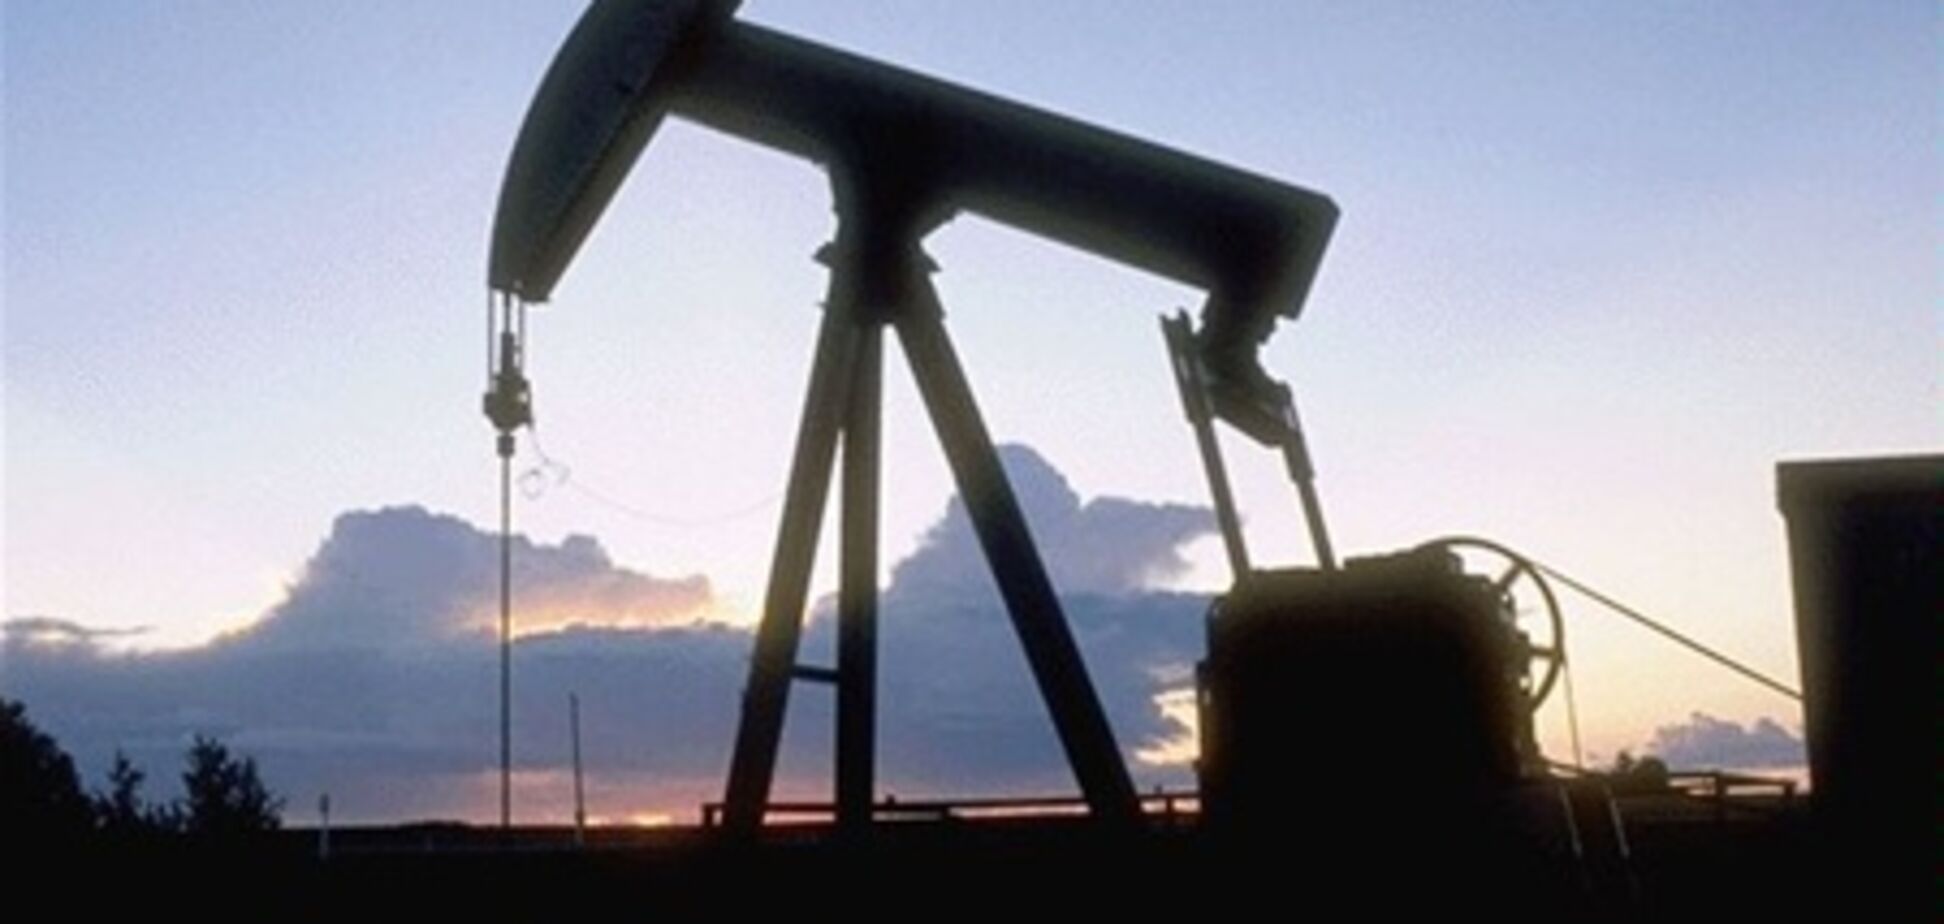 В 2012 году цена на нефть будет в среднем 115 долл. за баррель - эксперты